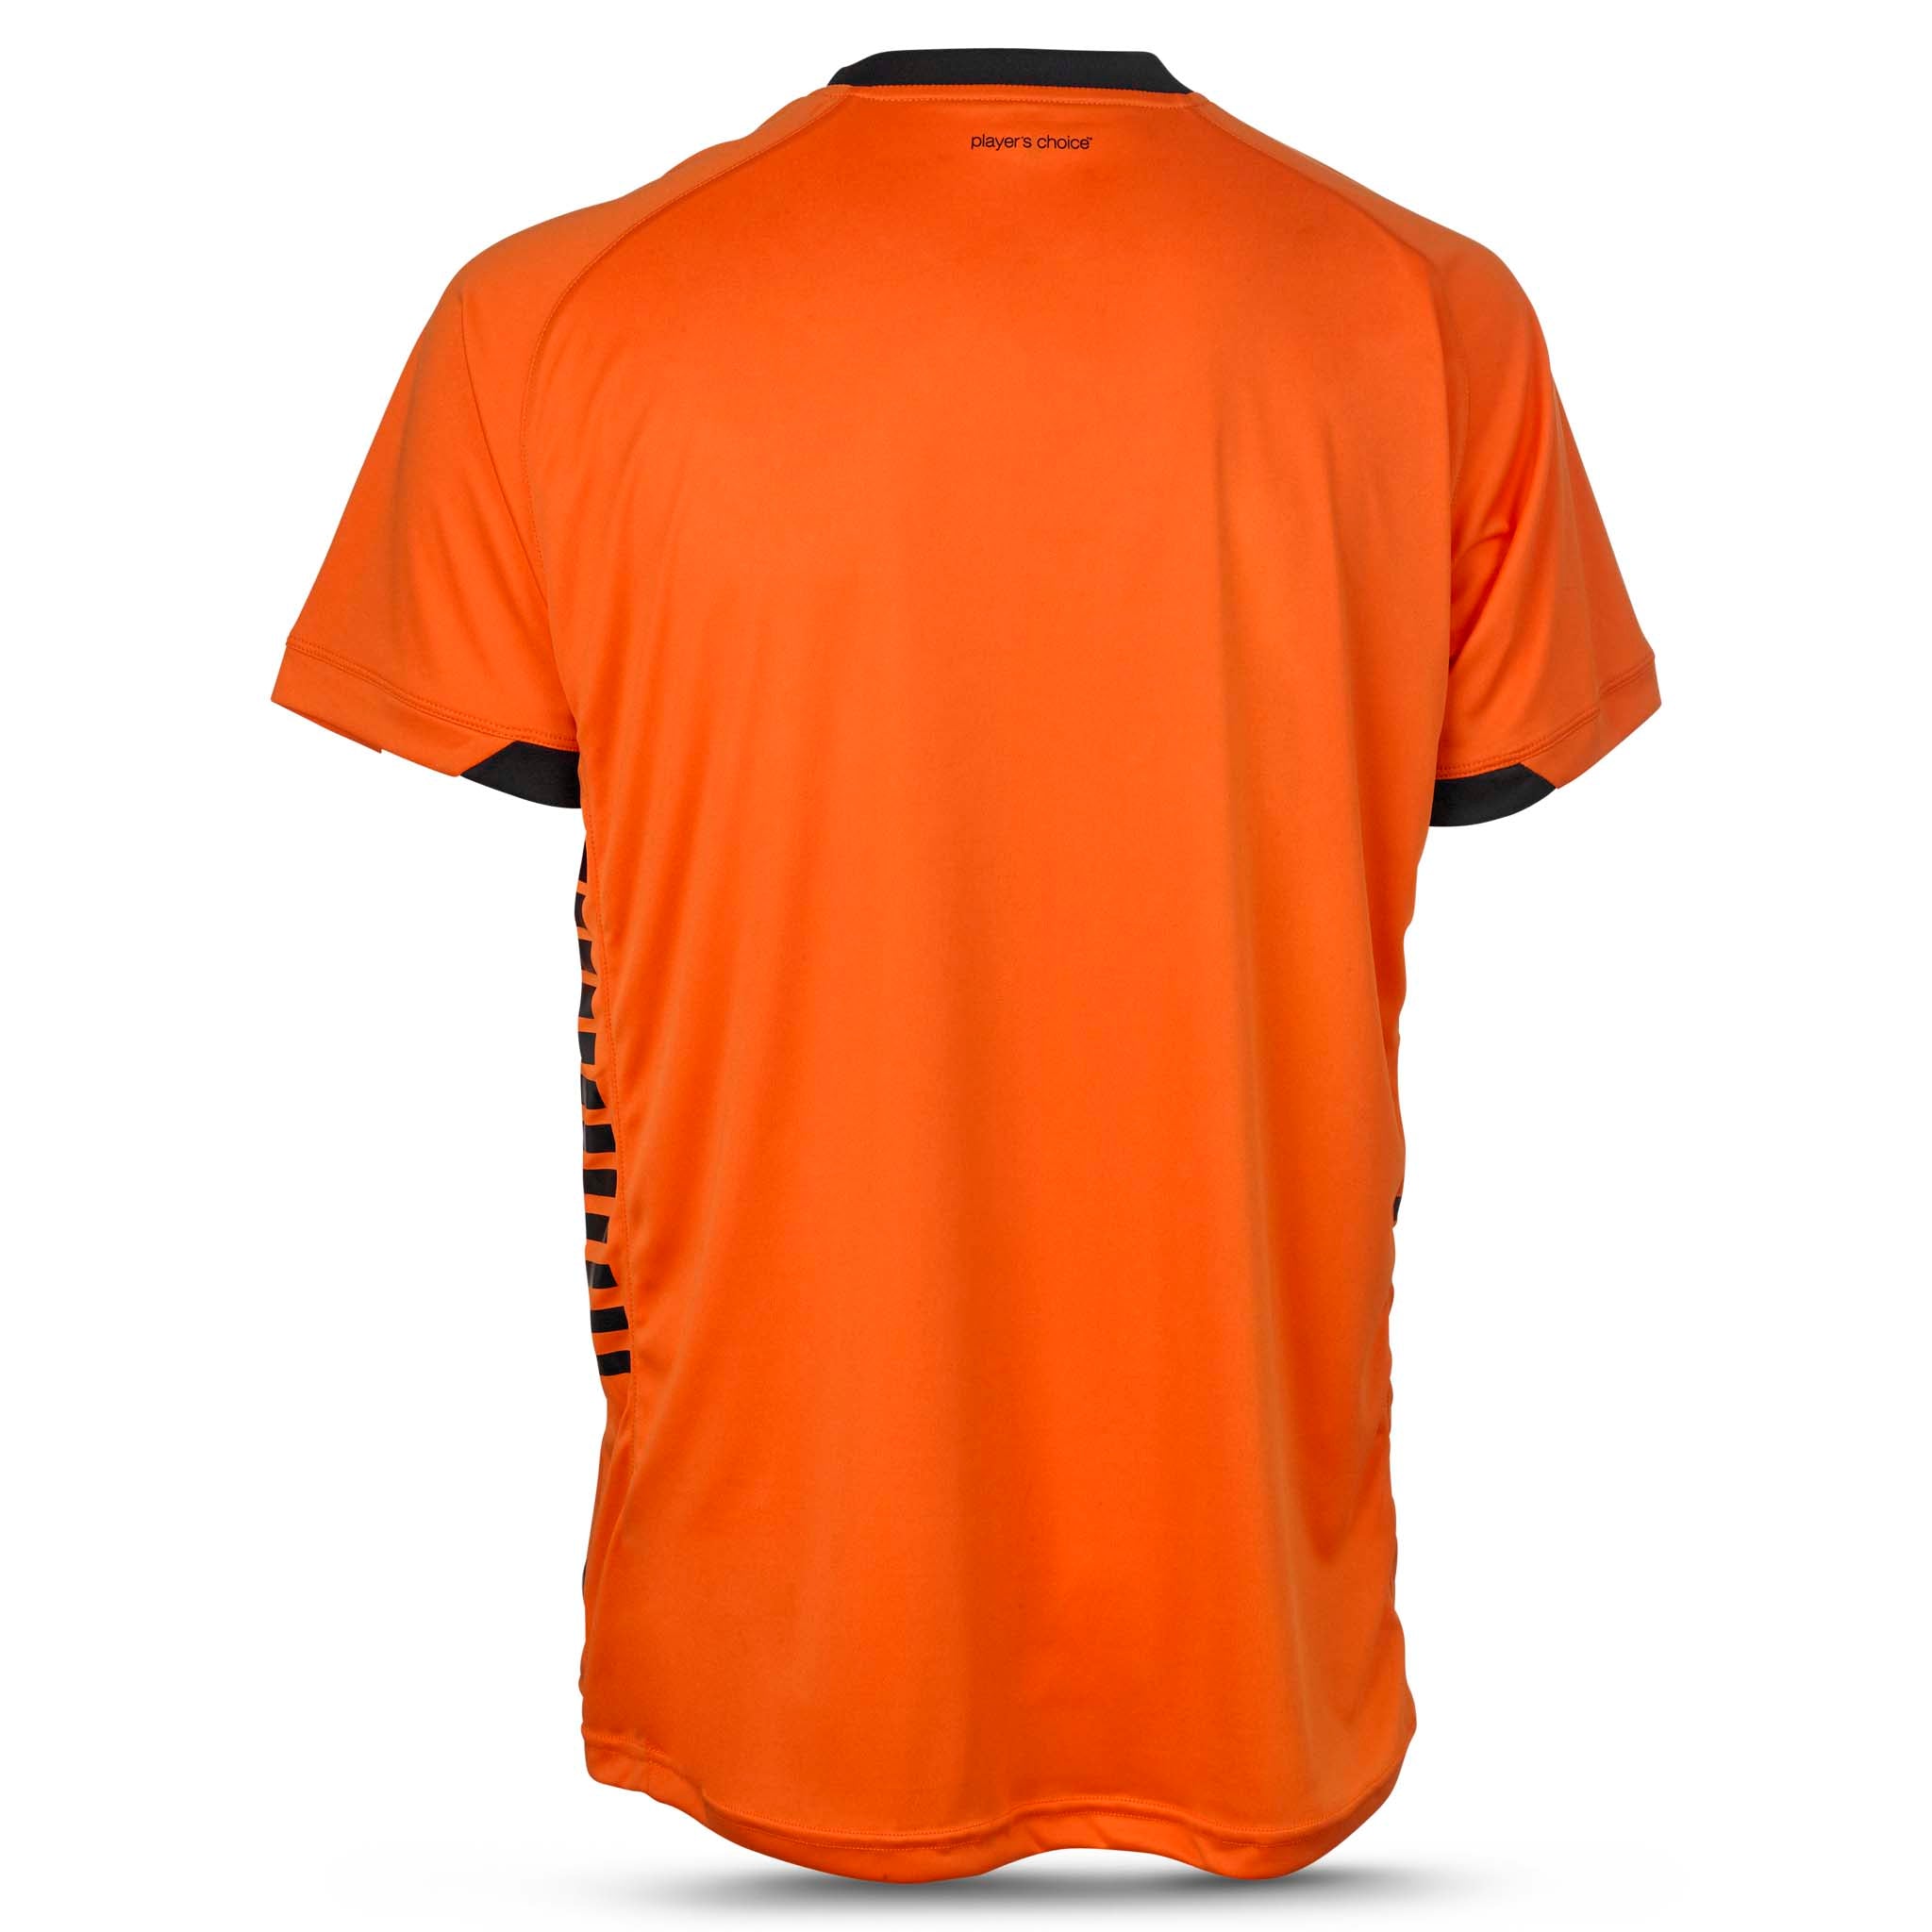 Spain Kortärmad spelartröja #färg_orange